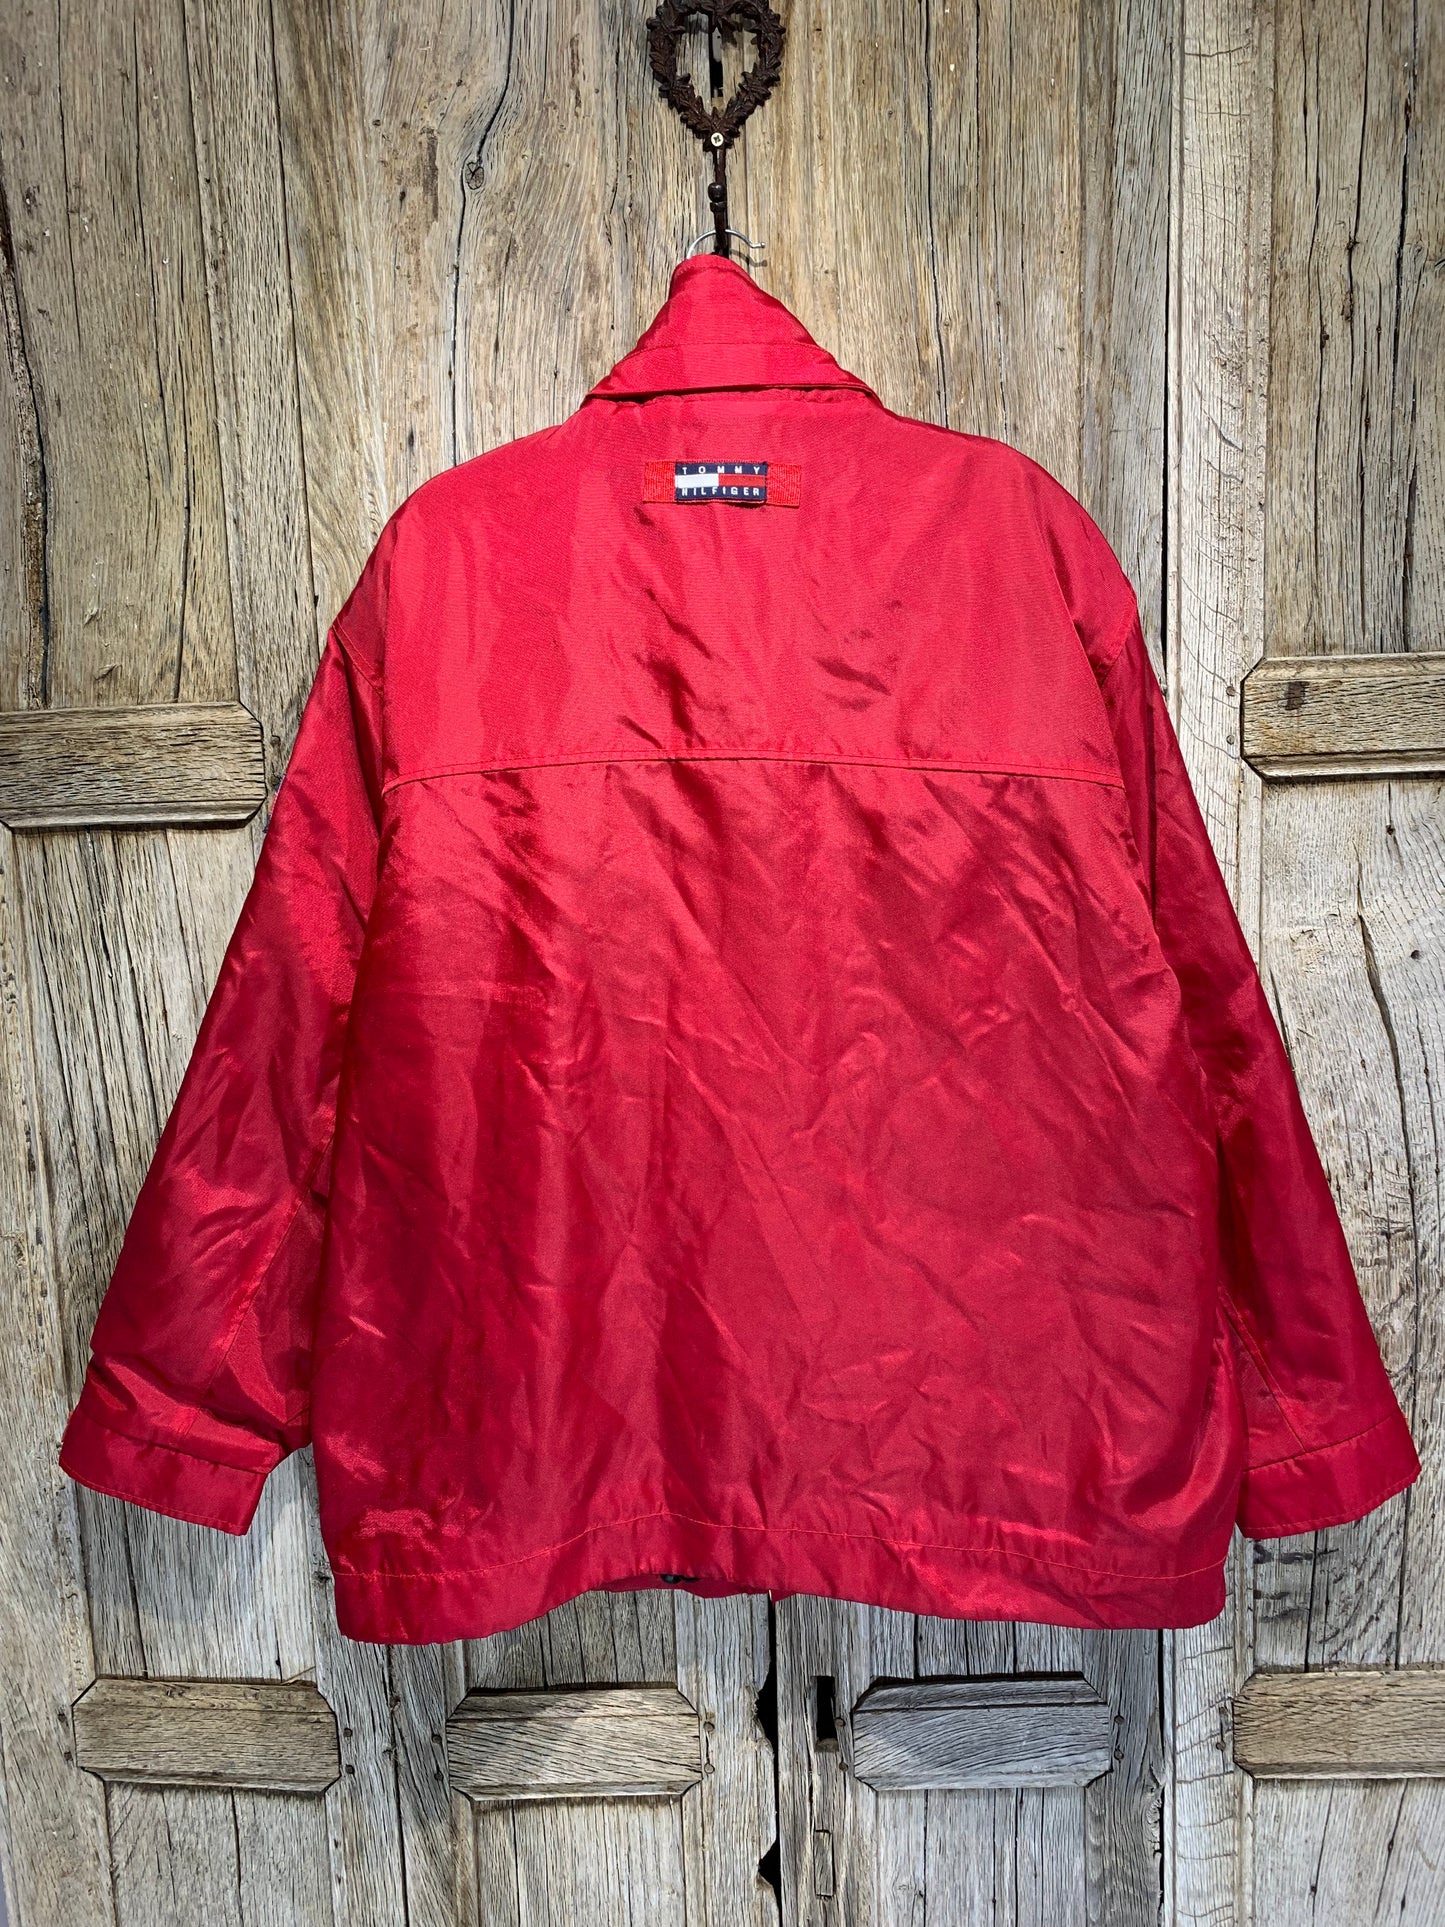 Tommy Hilfiger Red Vintage Jacket